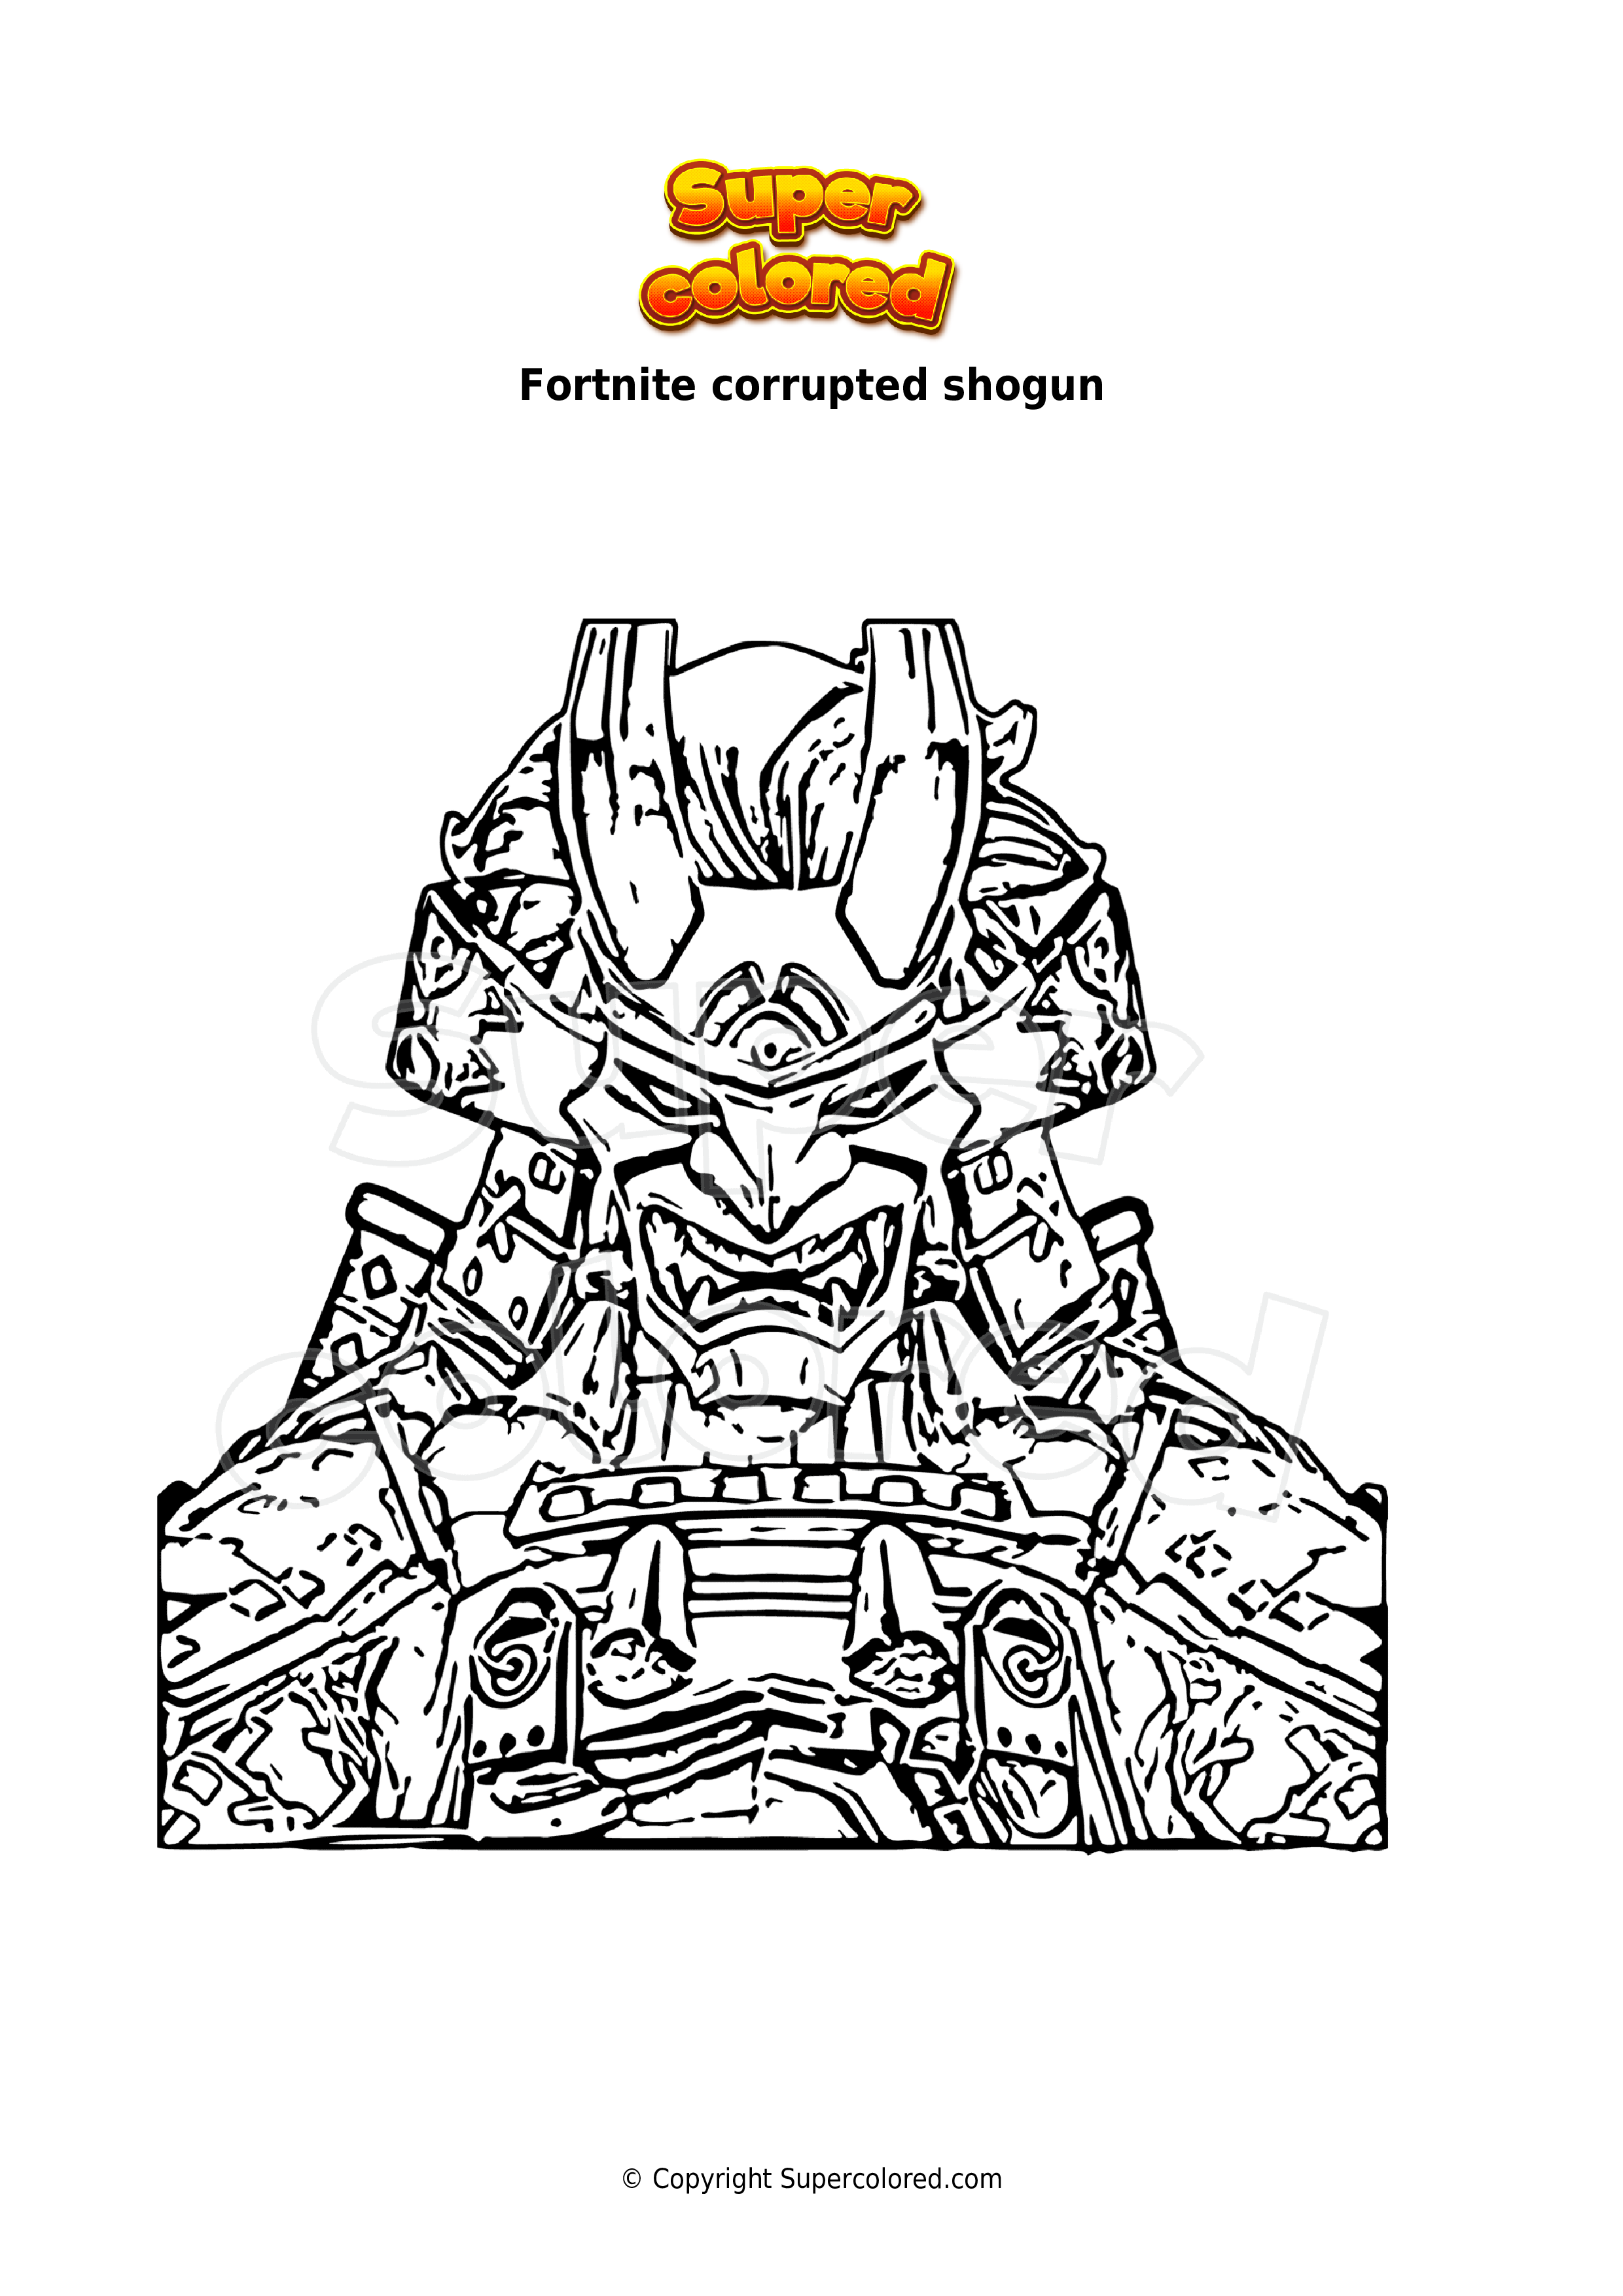 Coloring page Fortnite corrupted shogun - Supercolored.com